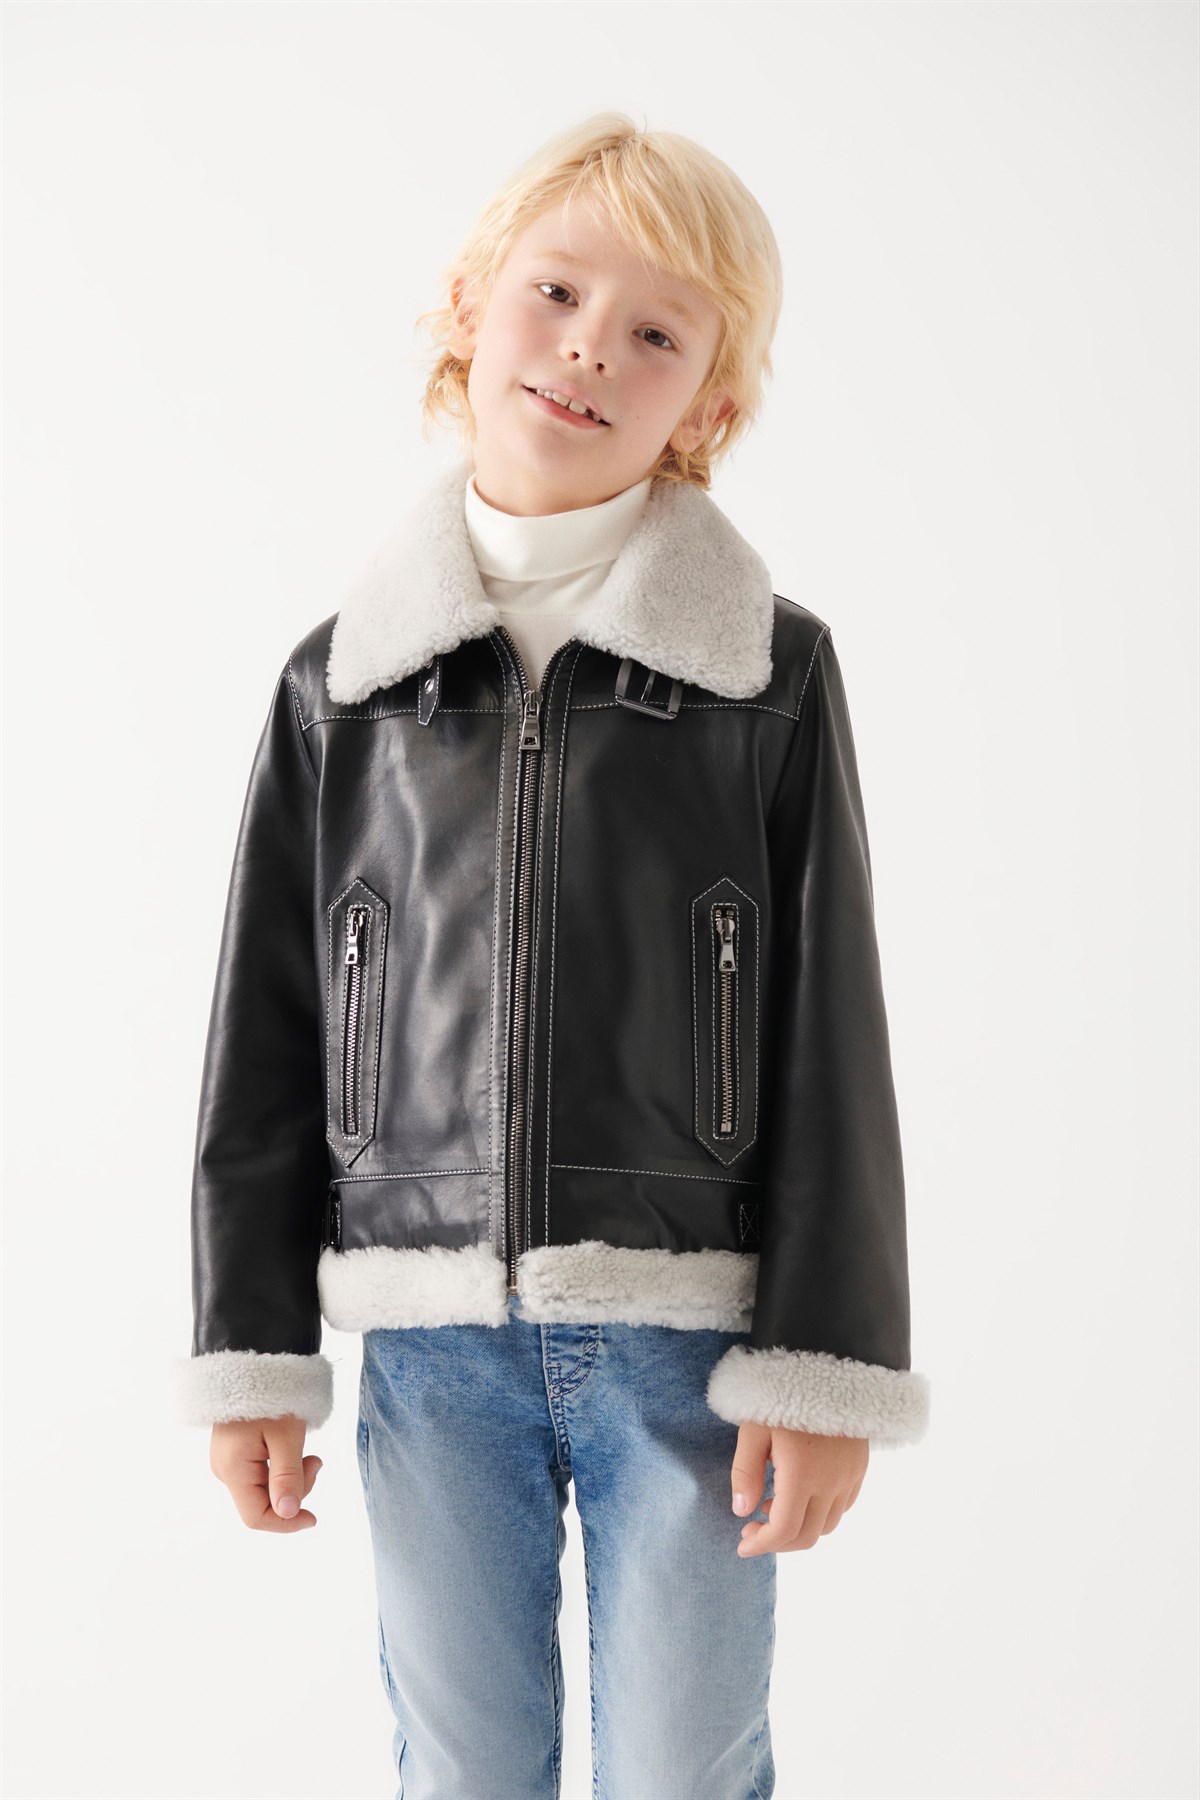 CHARLY Boys Black Leather Jacket | Boys Leather and Shearling Jacket & Coat